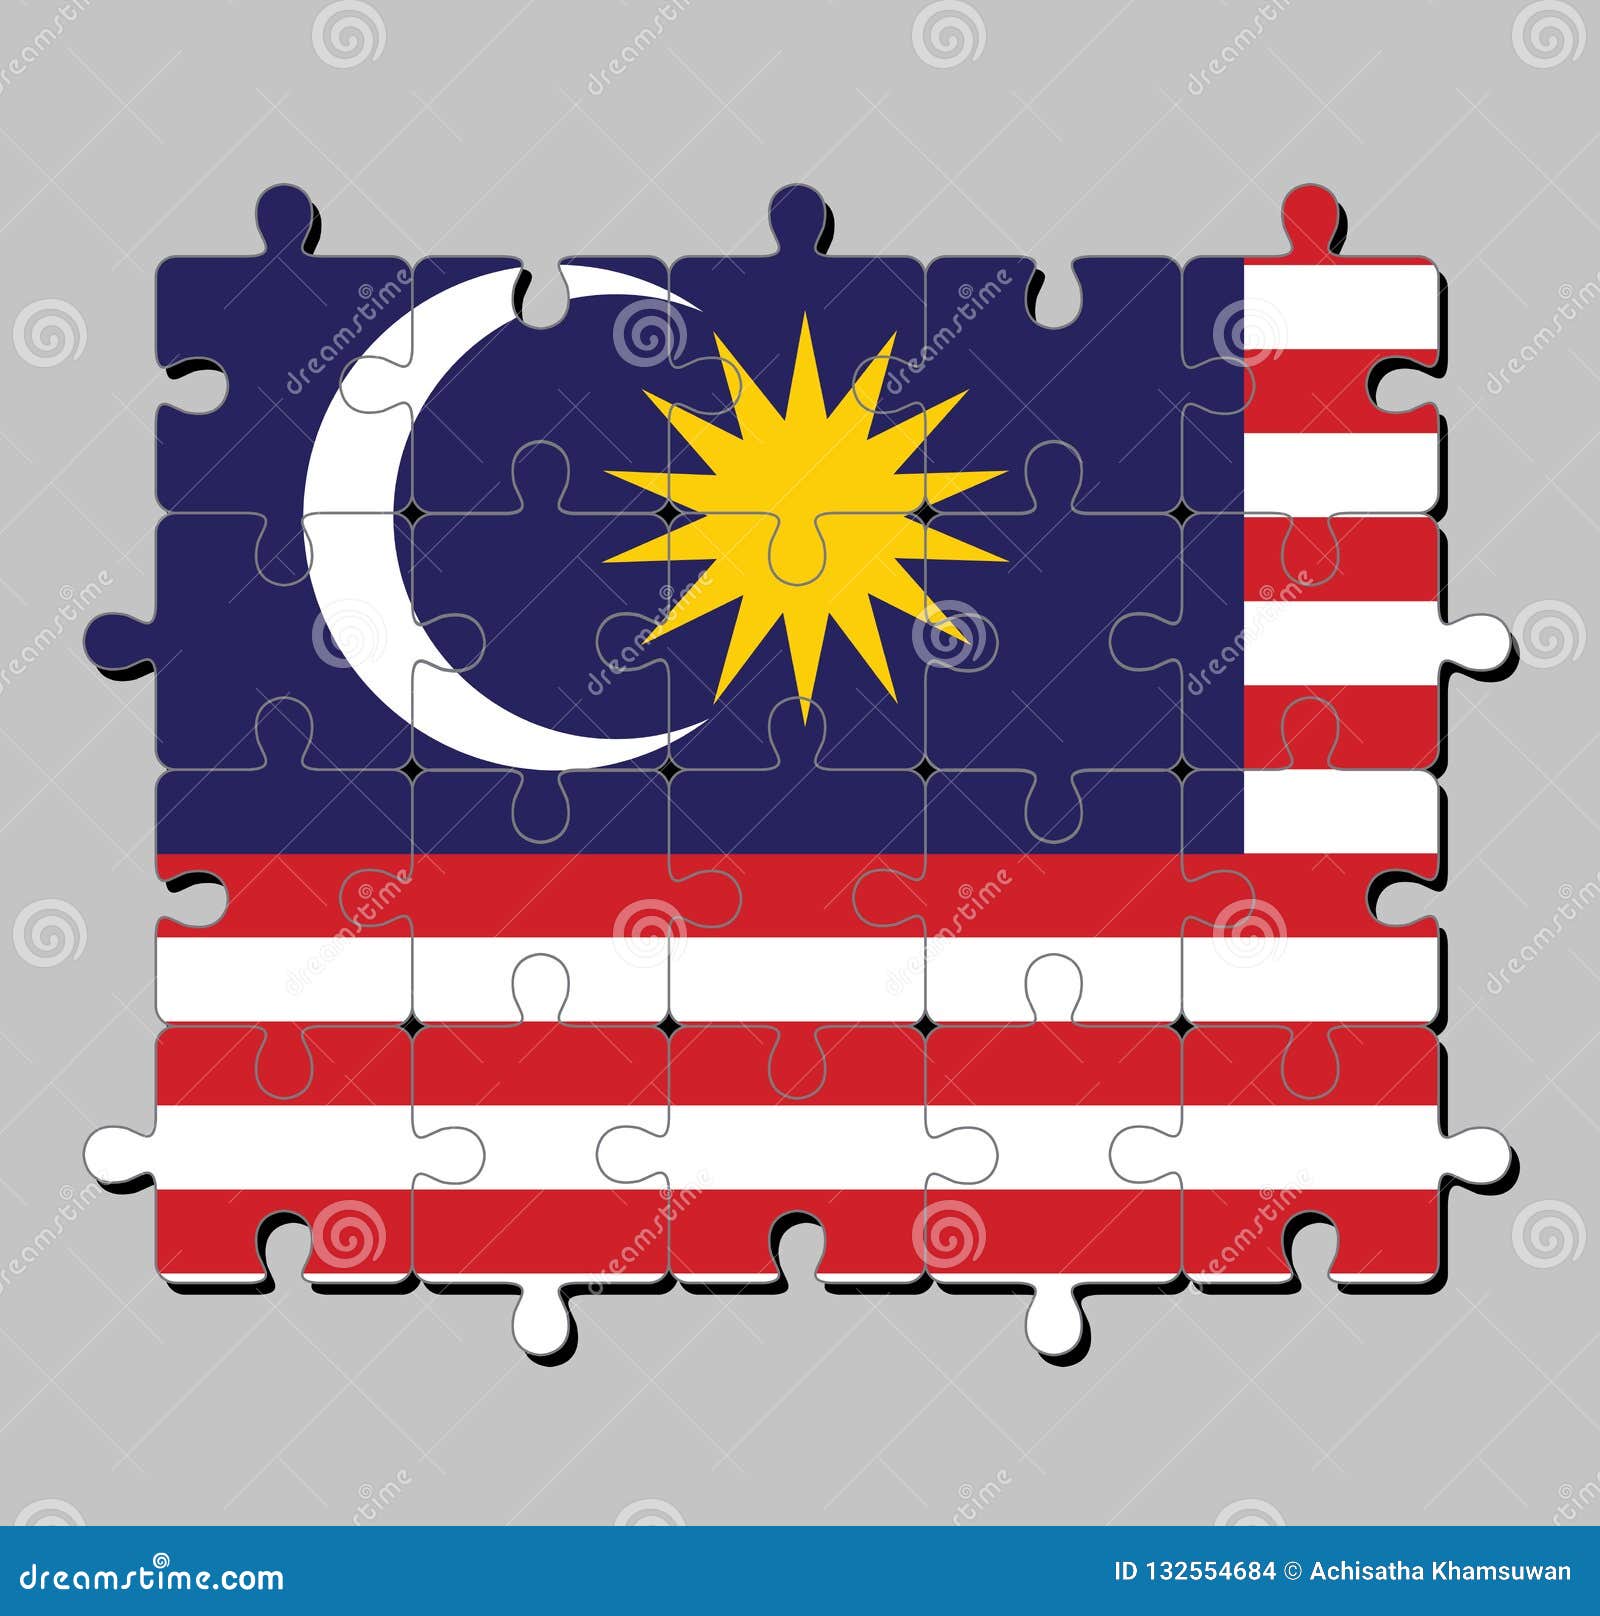 Puzzle Von Malaysia Flagge In Der Blauen Roten Weissen Und Gelben Farbe Mit Gelbem Stern Und Weissem Sichelformigem Mond Vektor Abbildung Illustration Von Farbe Weissen